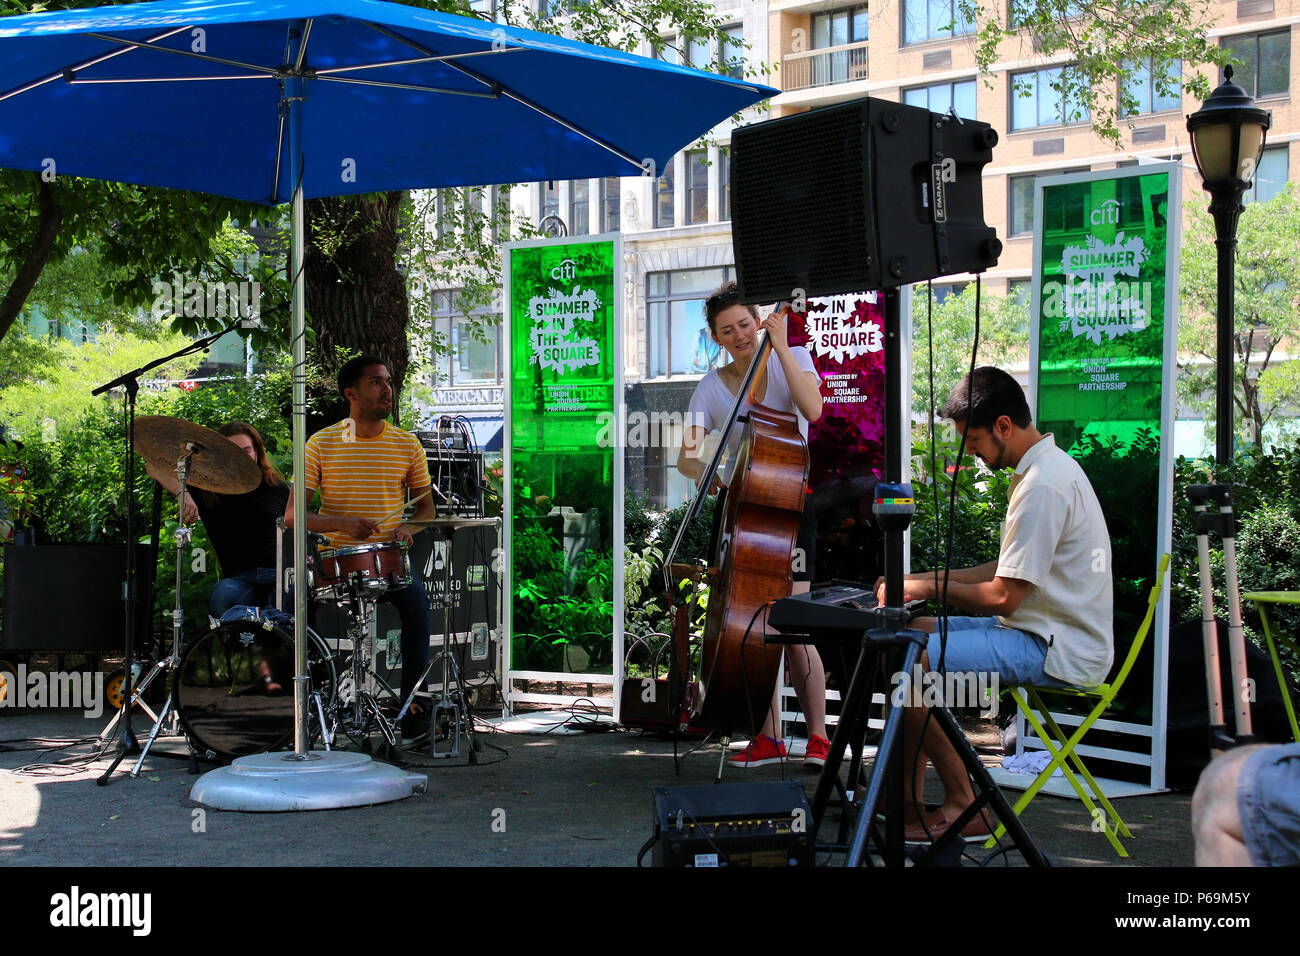 NEW YORK, NY - 22 juin : Jazz trio se produit sur scène en tant que partie de l'été à la place des activités libres dans Union Square à Manhattan sur Juin 22th, 201 Banque D'Images